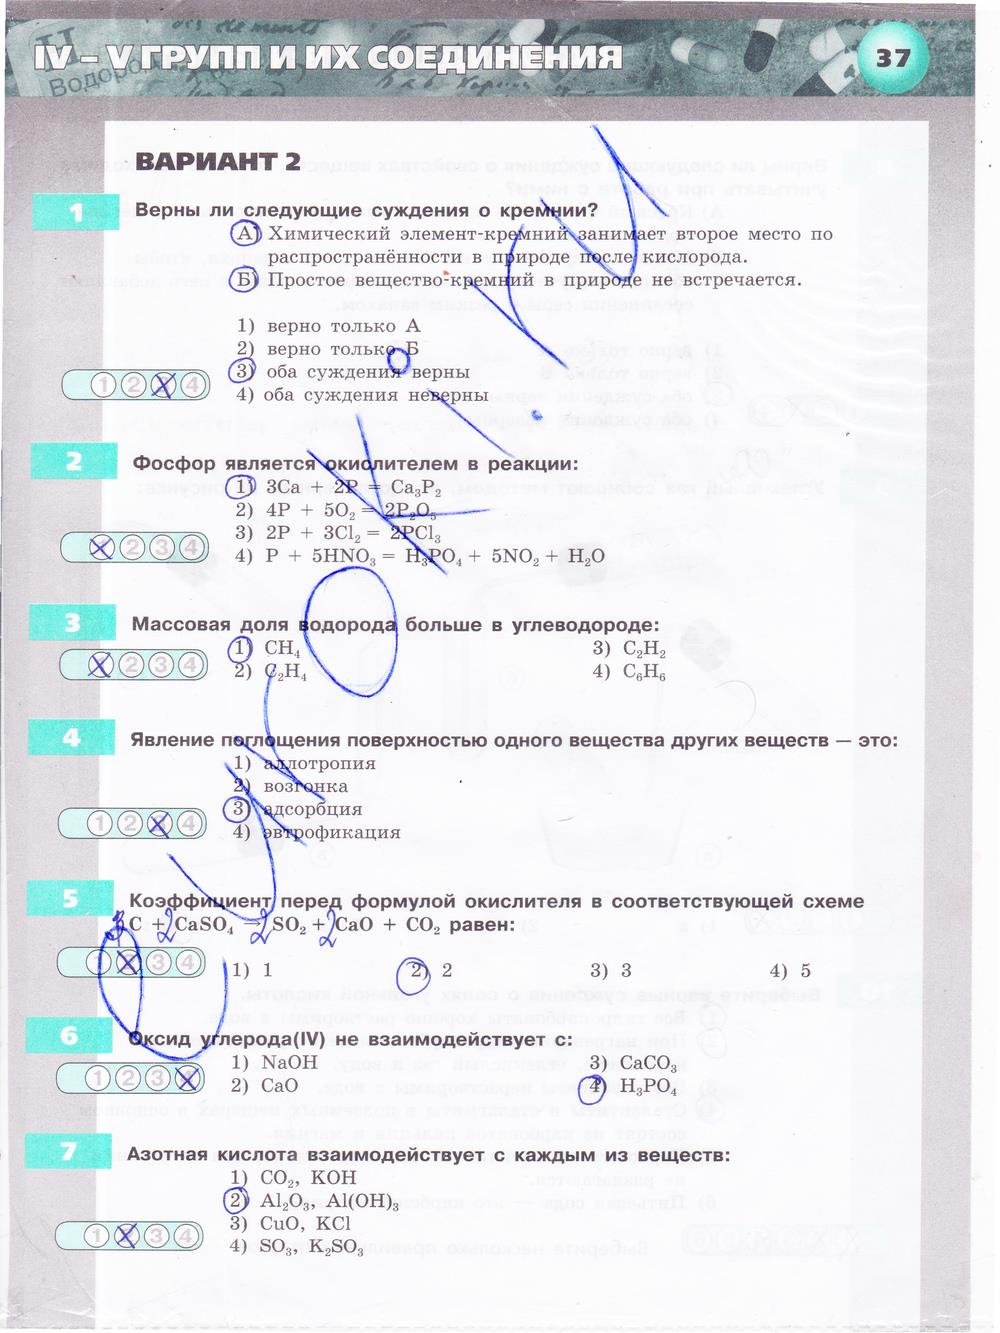 гдз 9 класс тетрадь-экзаменатор страница 37 химия Бобылева, Бирюлина